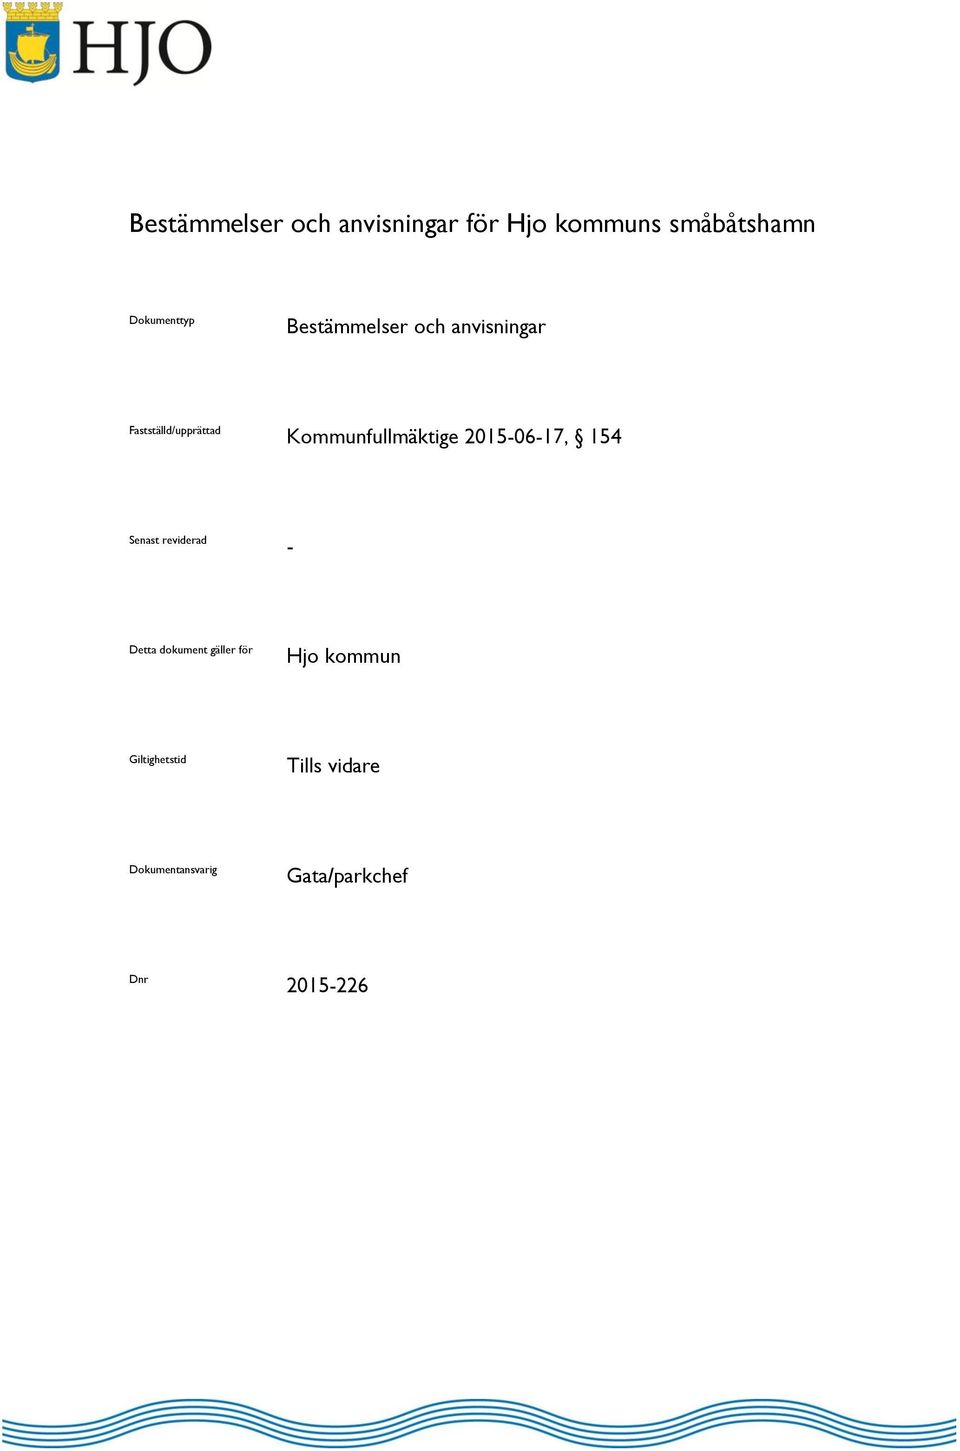 2015-06-17, 154 Senast reviderad - Detta dokument gäller för Hjo